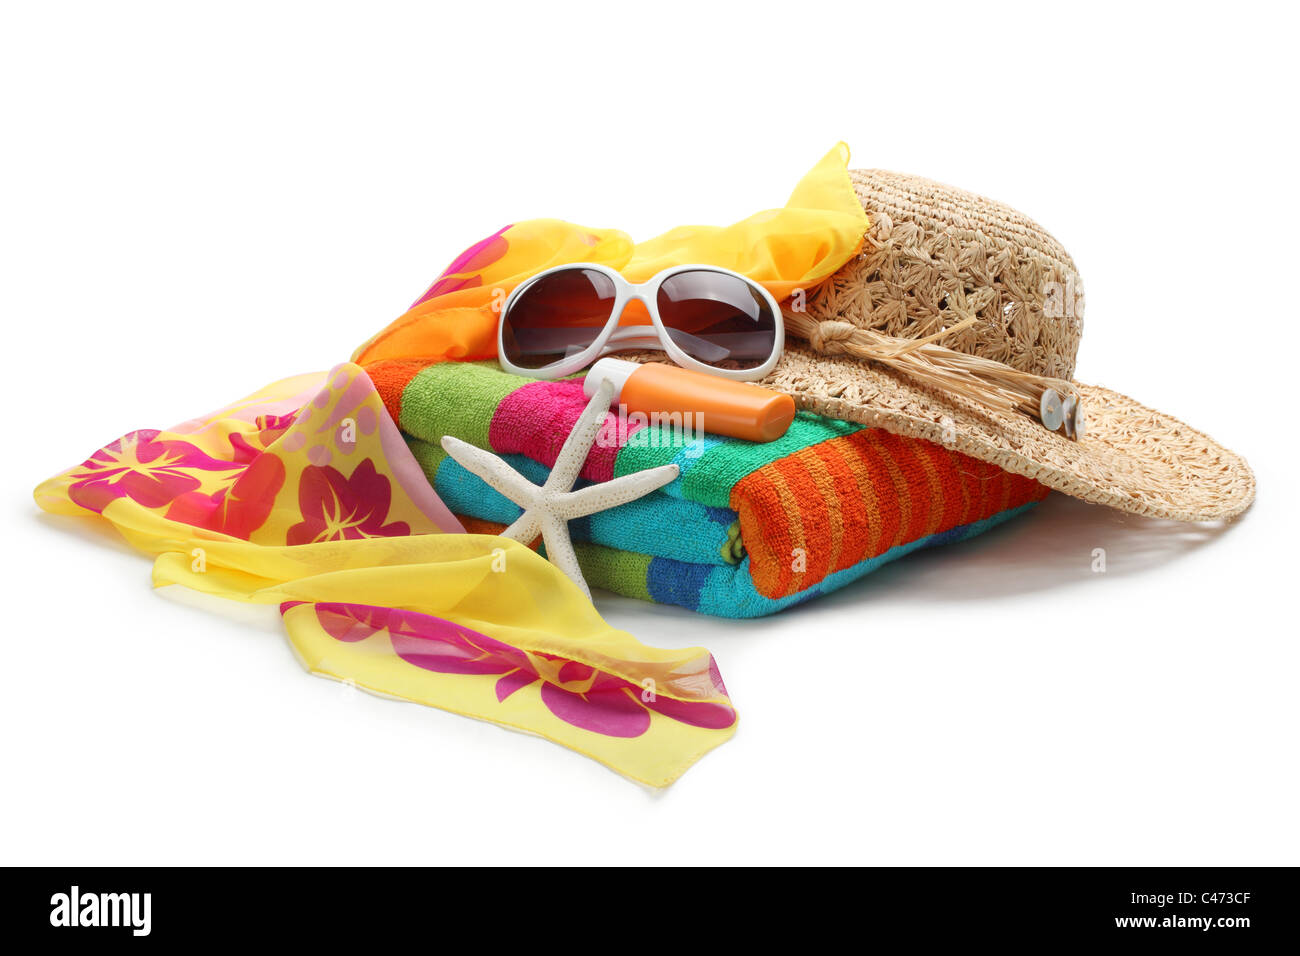 Accessoires de plage--chapeau de paille,lunettes,châle serviette et isolé sur fond blanc. Banque D'Images